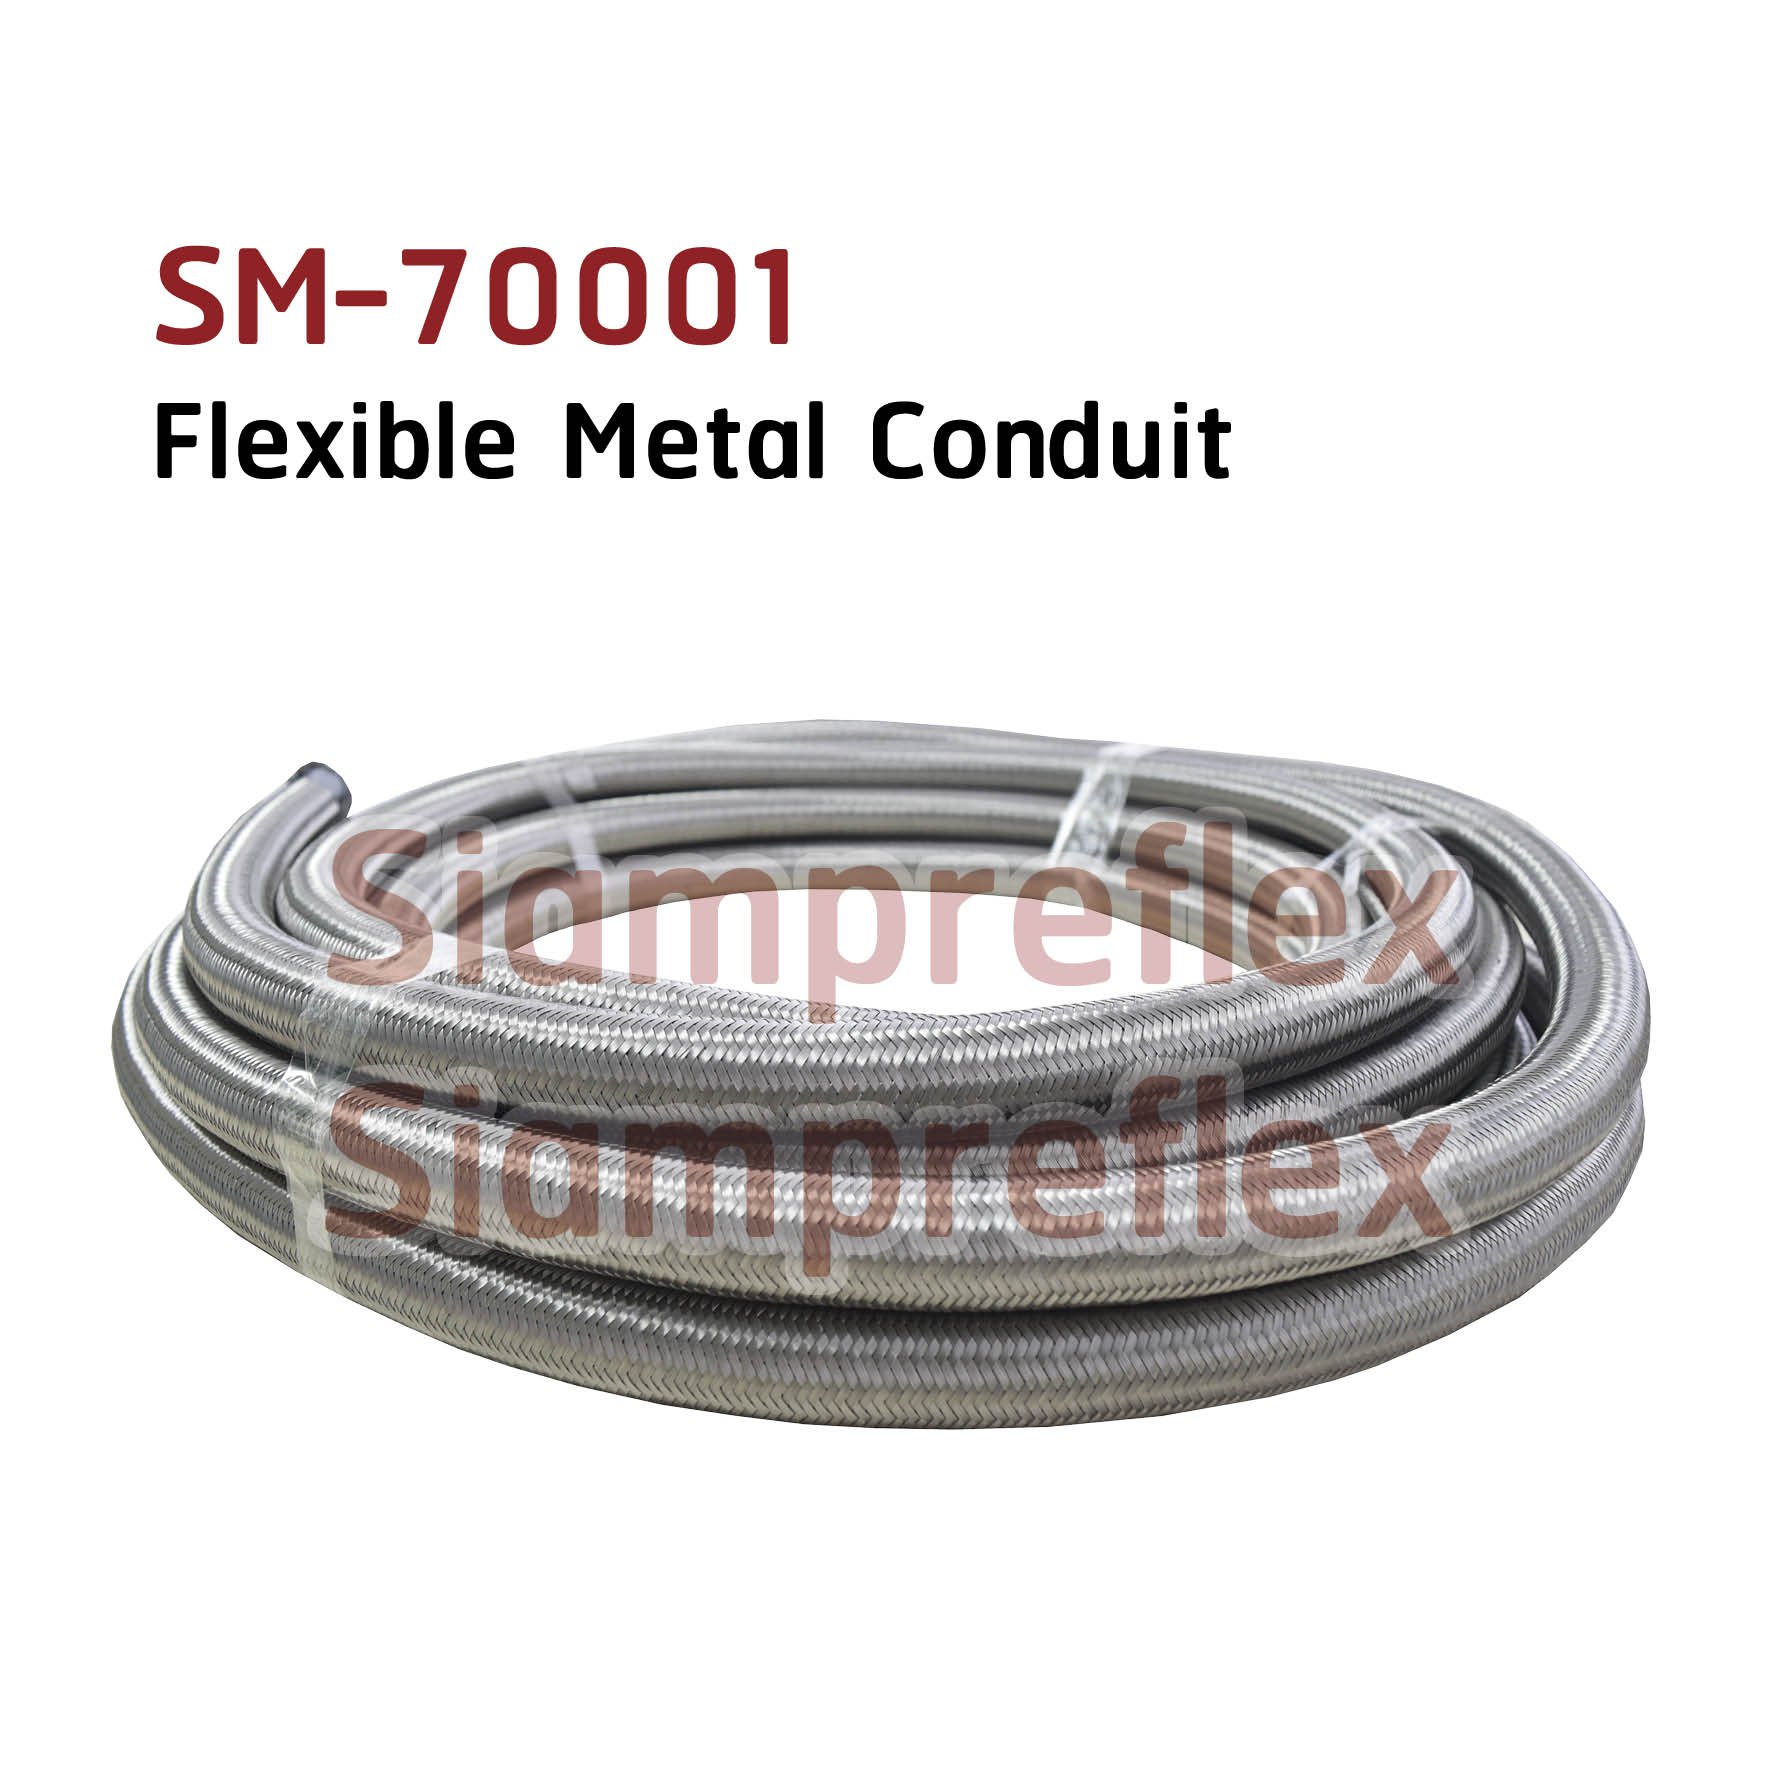 Sm-70001, ท่อร้อยสายไฟชนิดเหล็กถักหุ้ม - Siampreflex